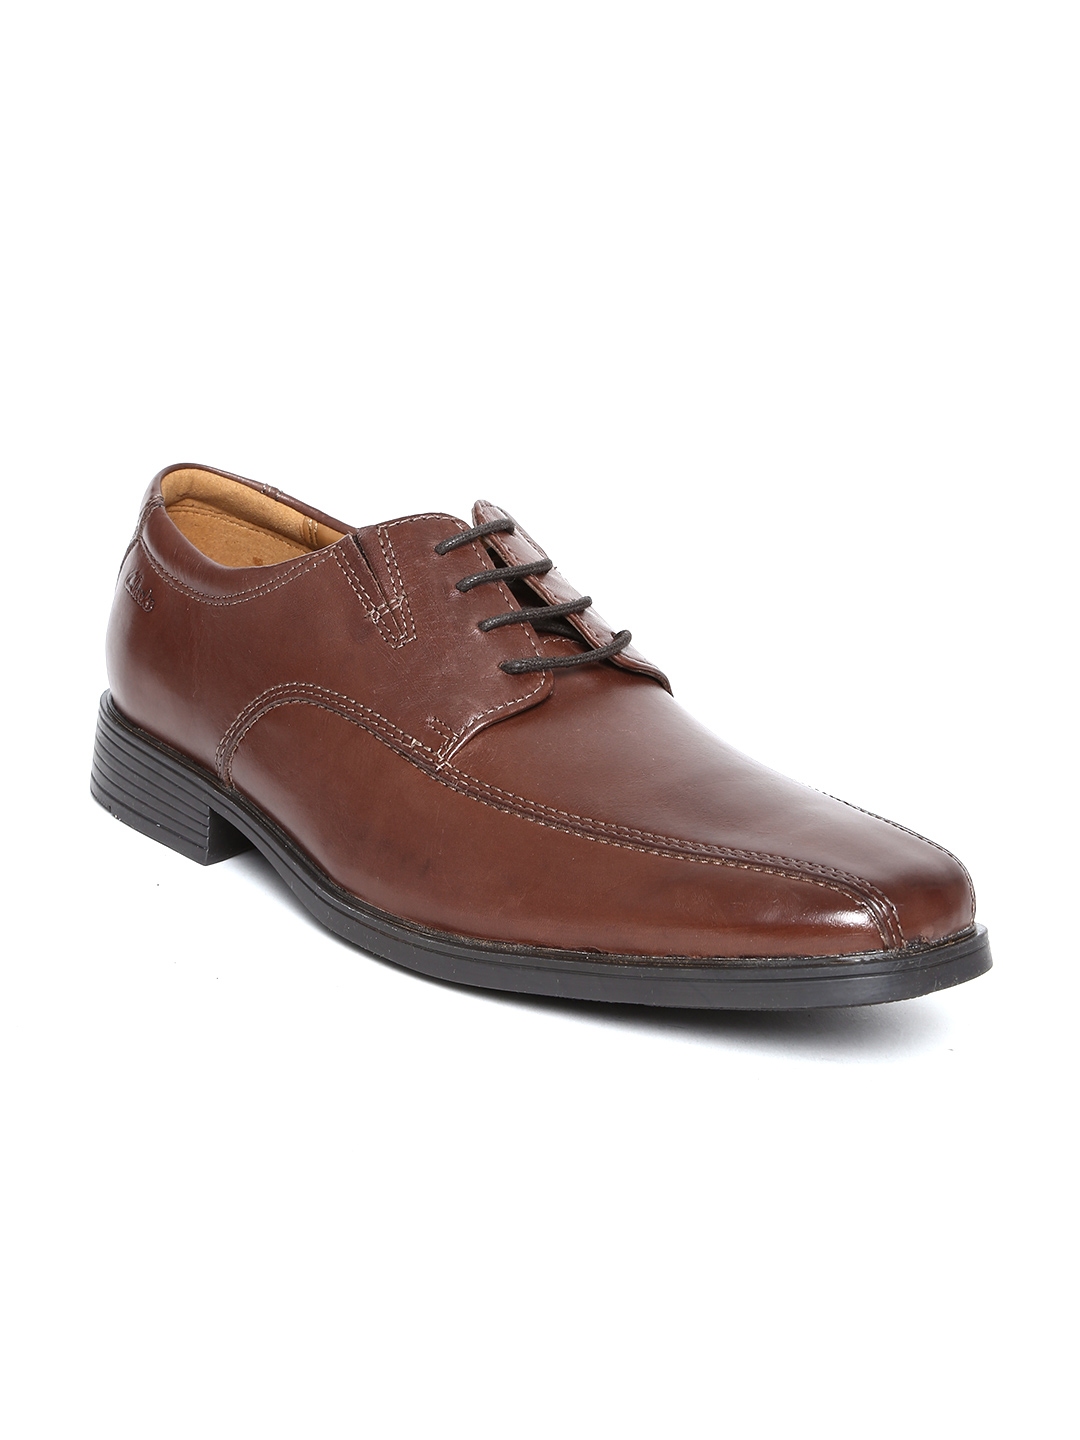 Buy Clarks Men Brown Leather Formal Shoes - Formal Shoes for Men ...